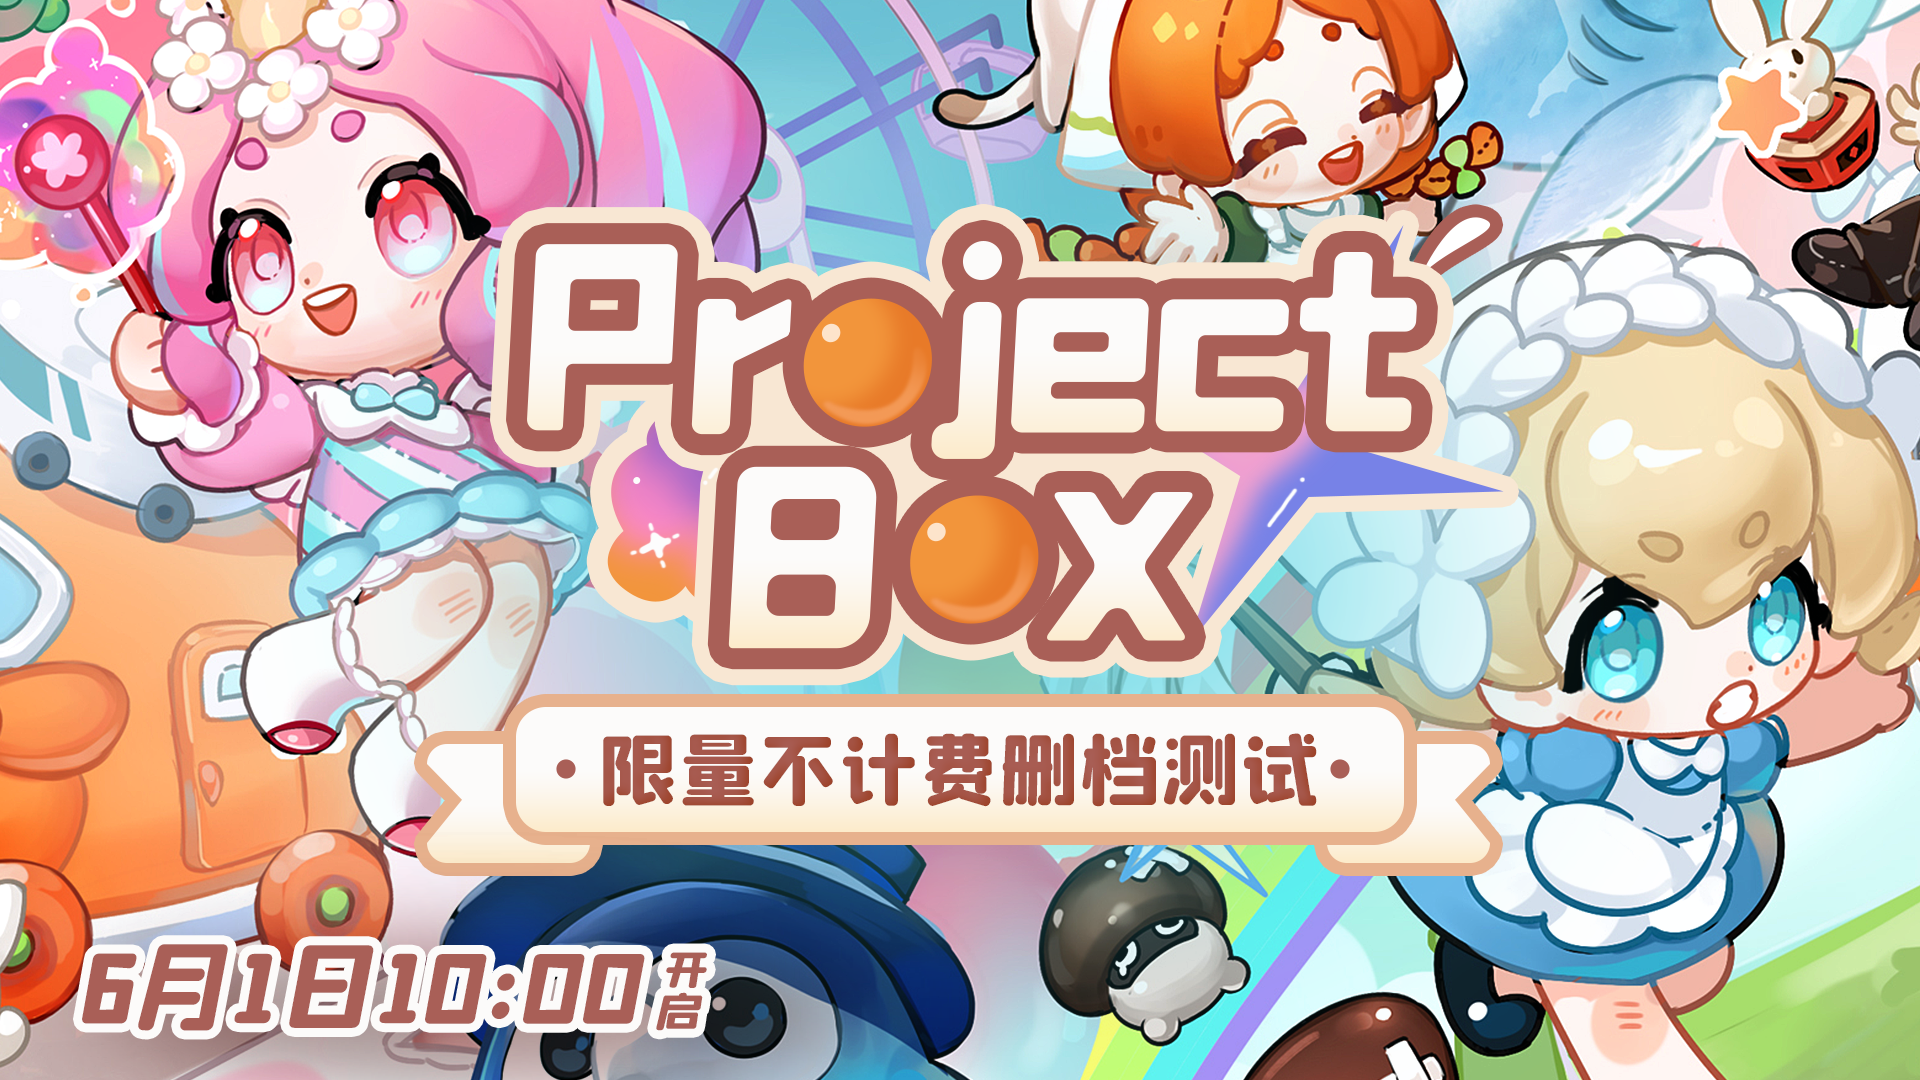 【首测开启】《Project Box》限量不计费删档测试今日开启！